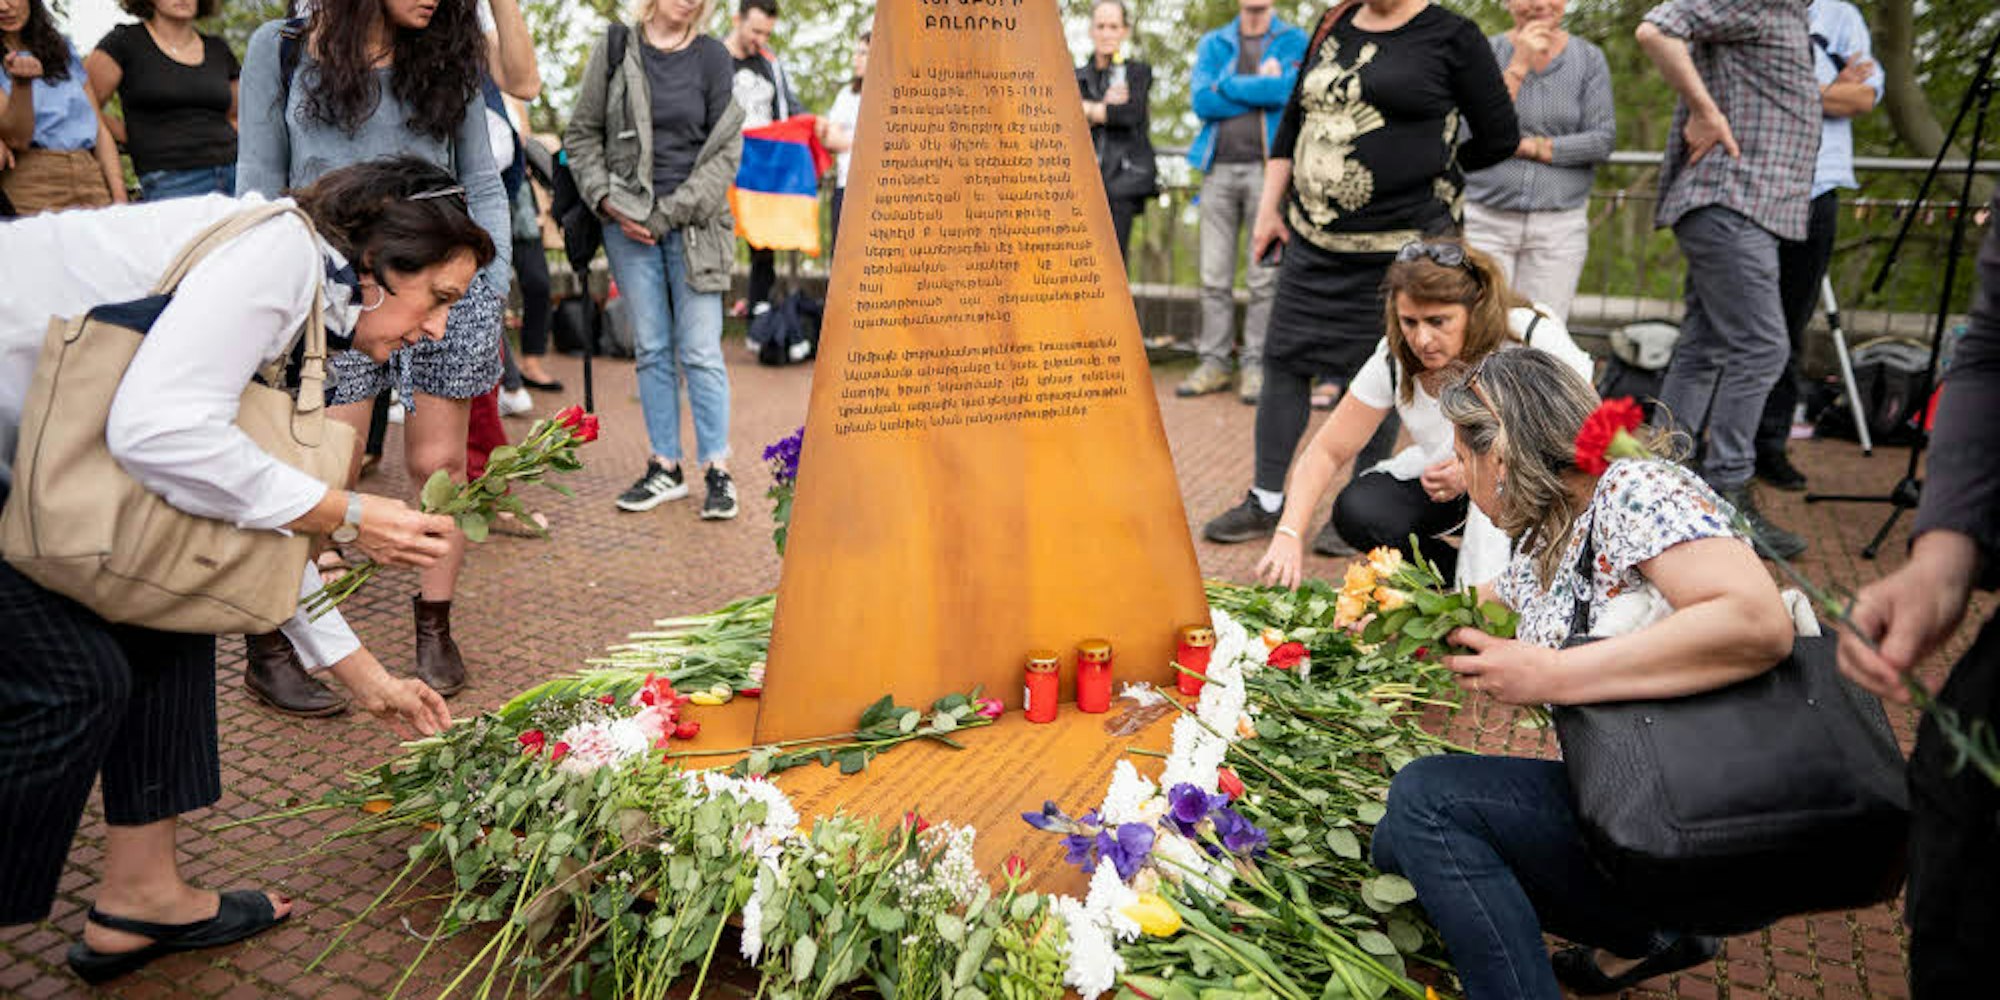 Trauer und Reden am Mahnmal: Nur für die Veranstaltung baute die Initiative „Völkermord erinnern“ die Gedenkstele an der Hohenzollernbrücke nahe Philharmonie vorübergehend wieder auf.